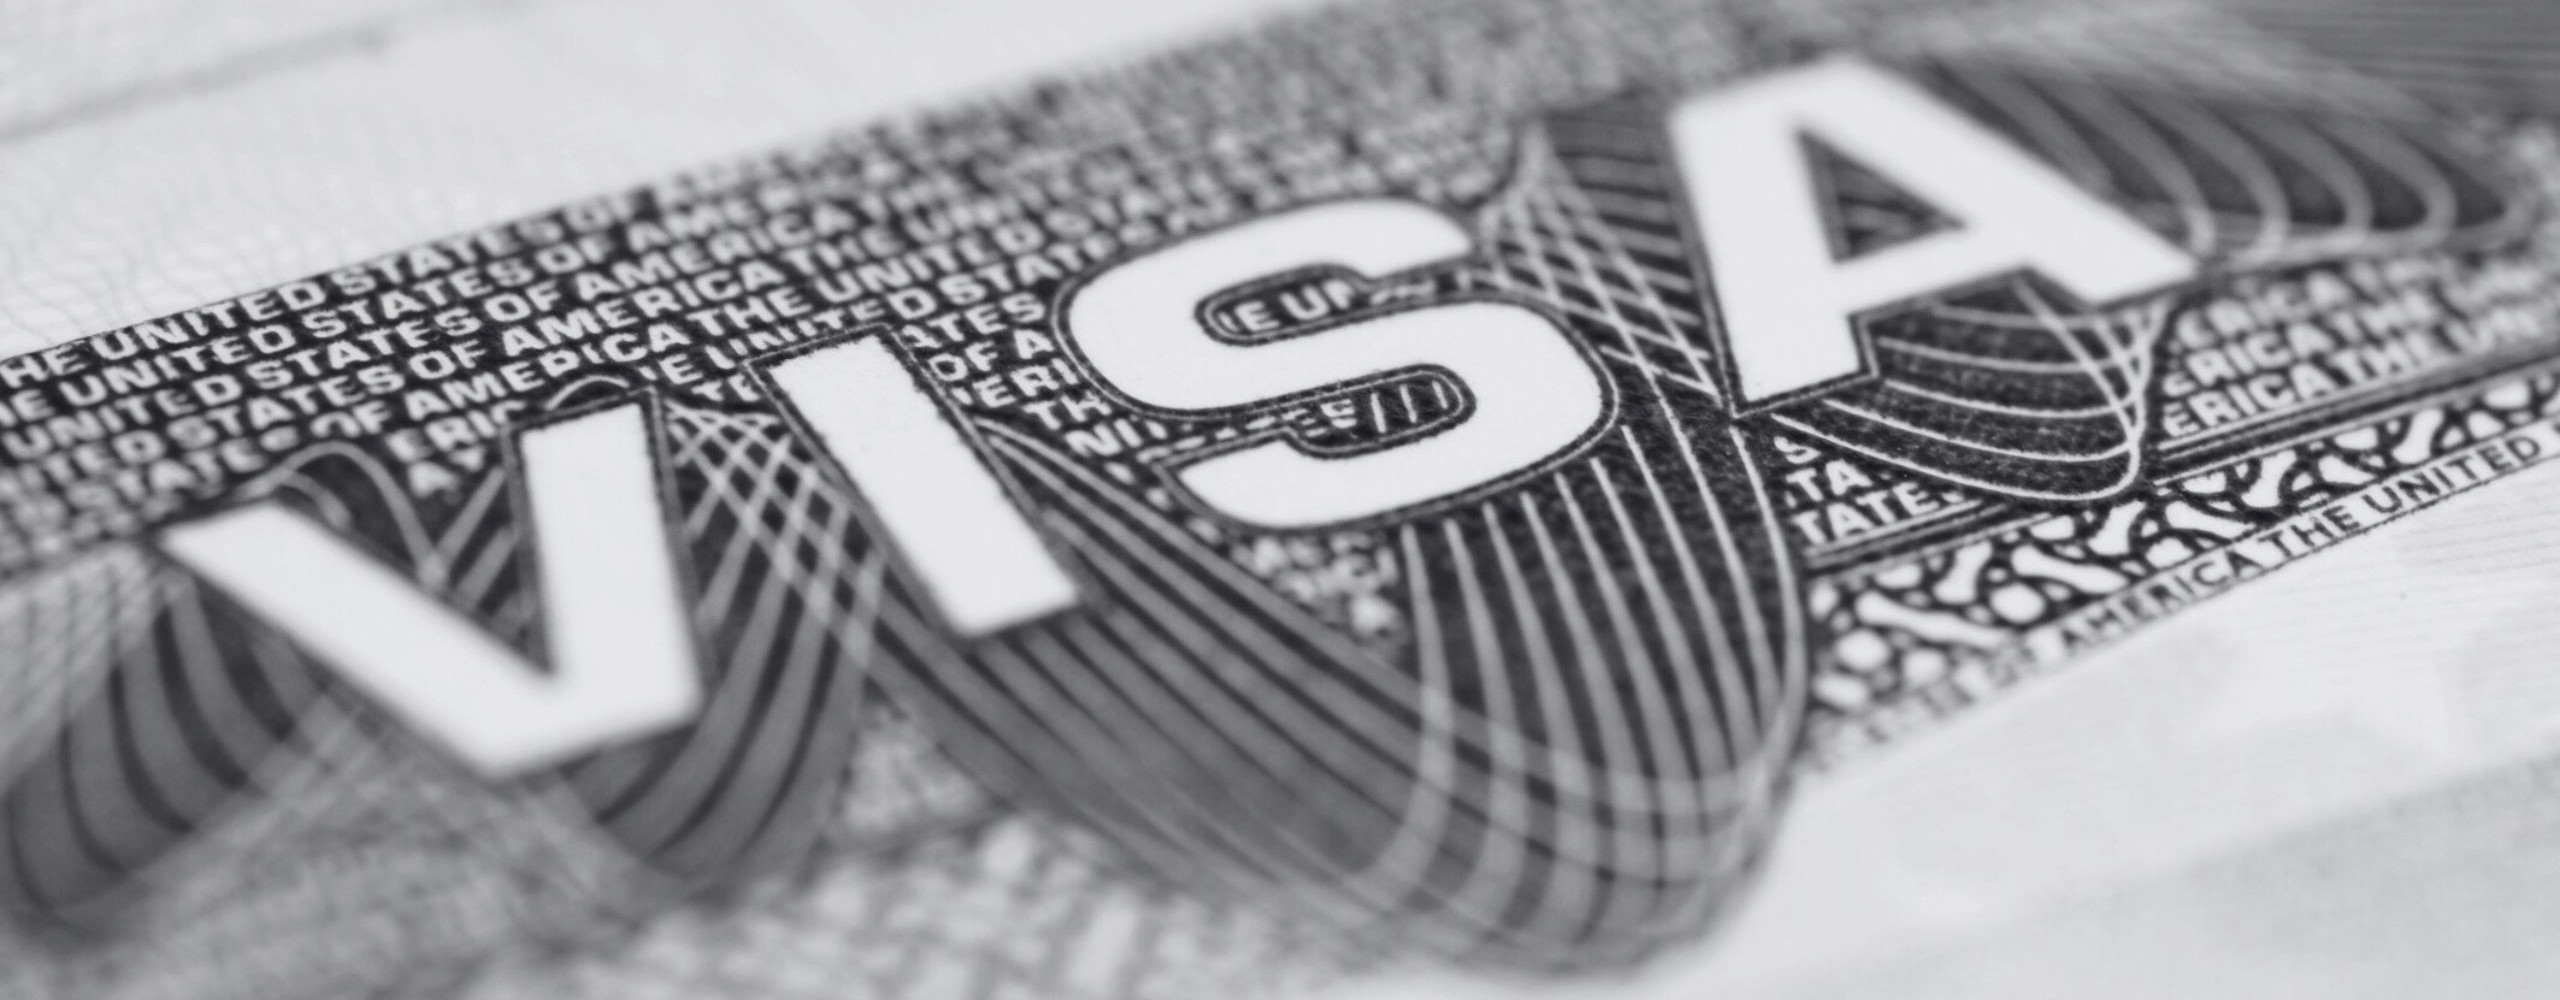 US Visa Service mit jahrzehntelanger Expertise